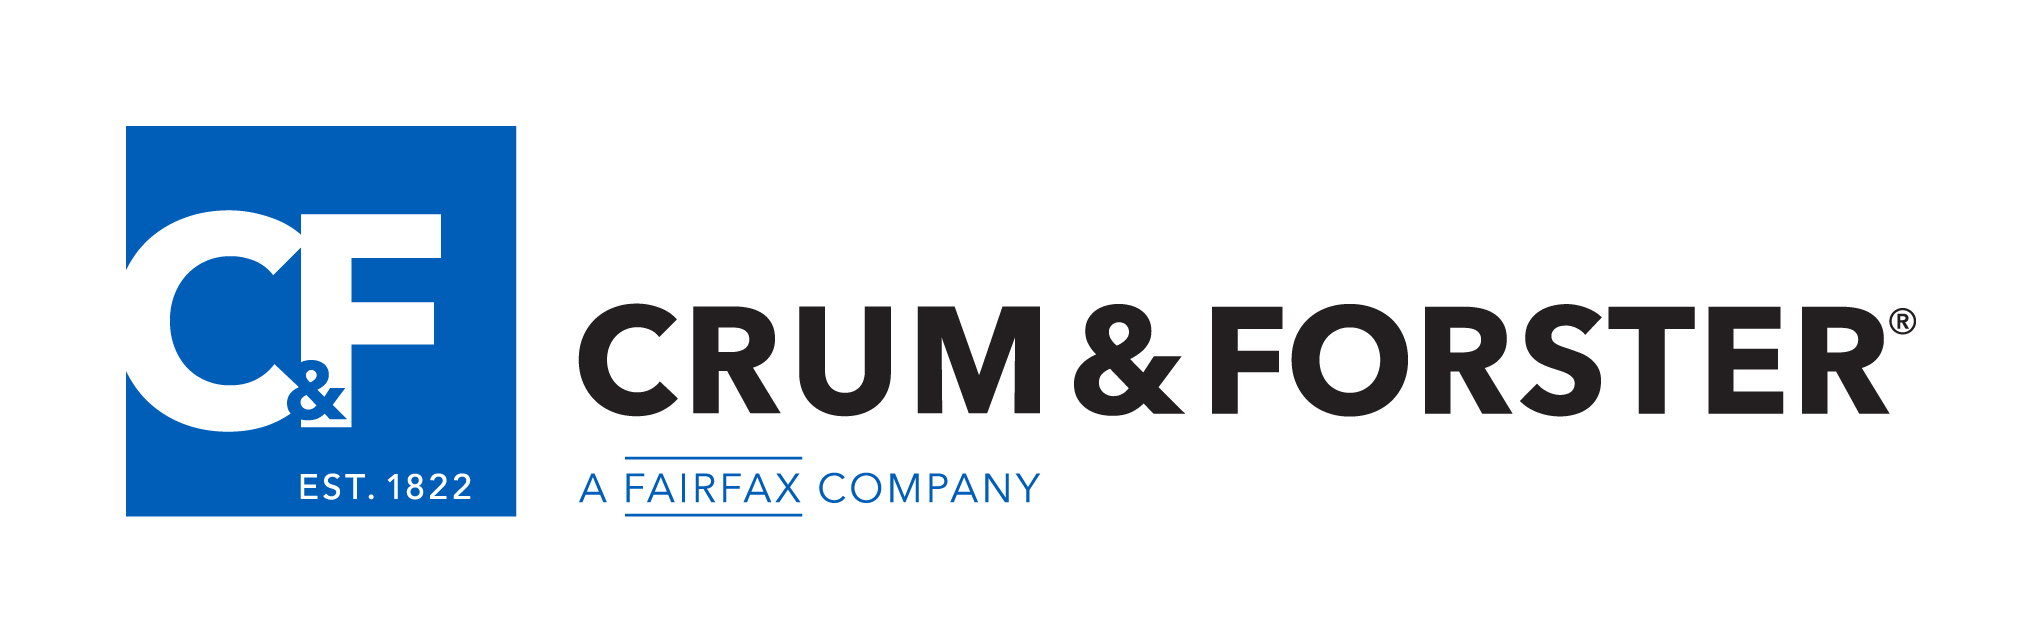 Crum & Forster Insurance